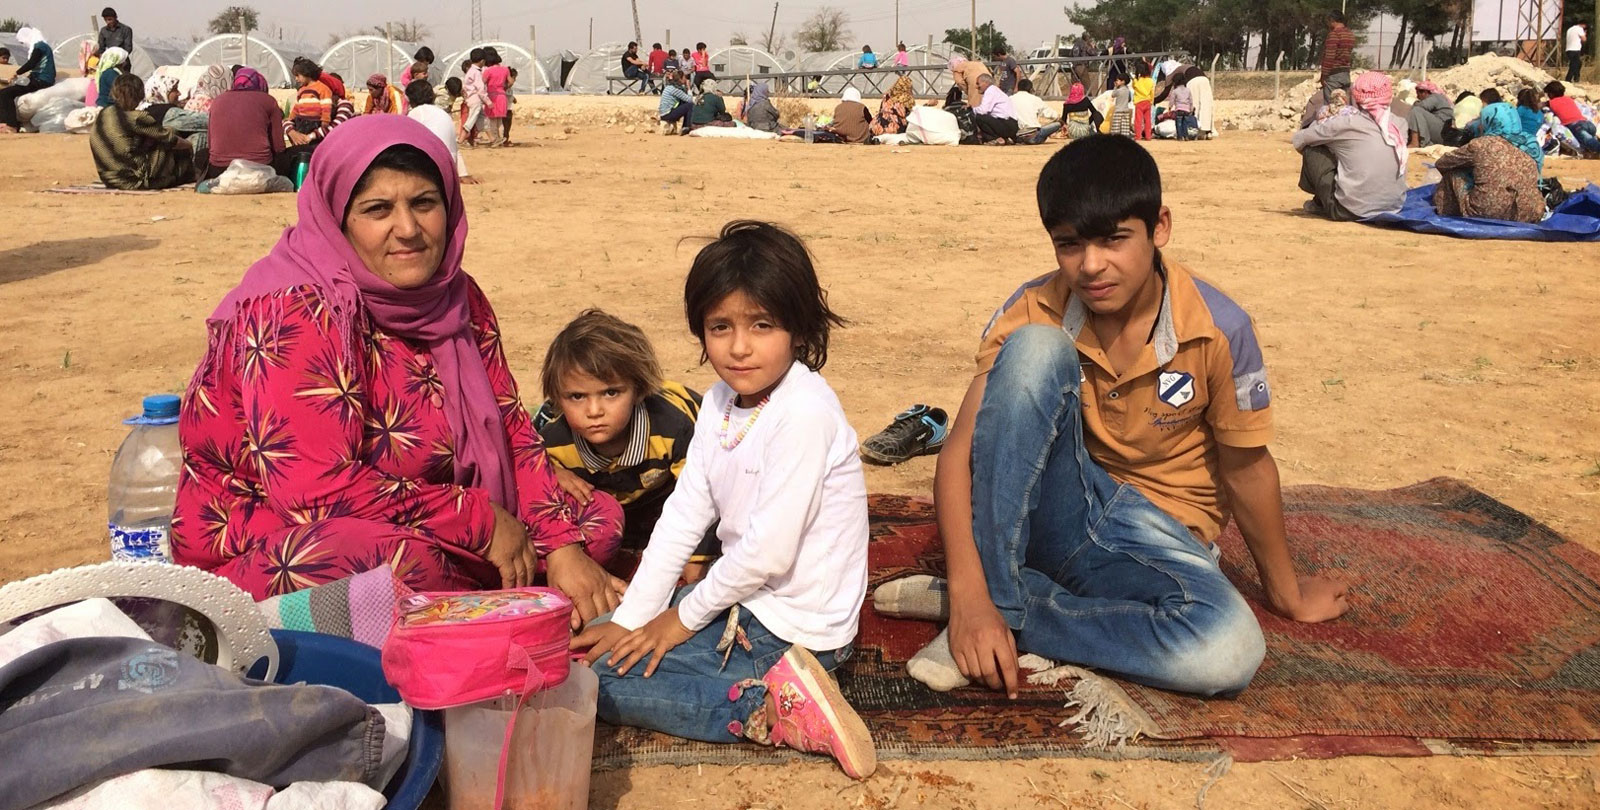 Une mère syrienne est assise avec ses enfants et quelques biens dans un camp de réfugiés sur le sol à l'air libre.